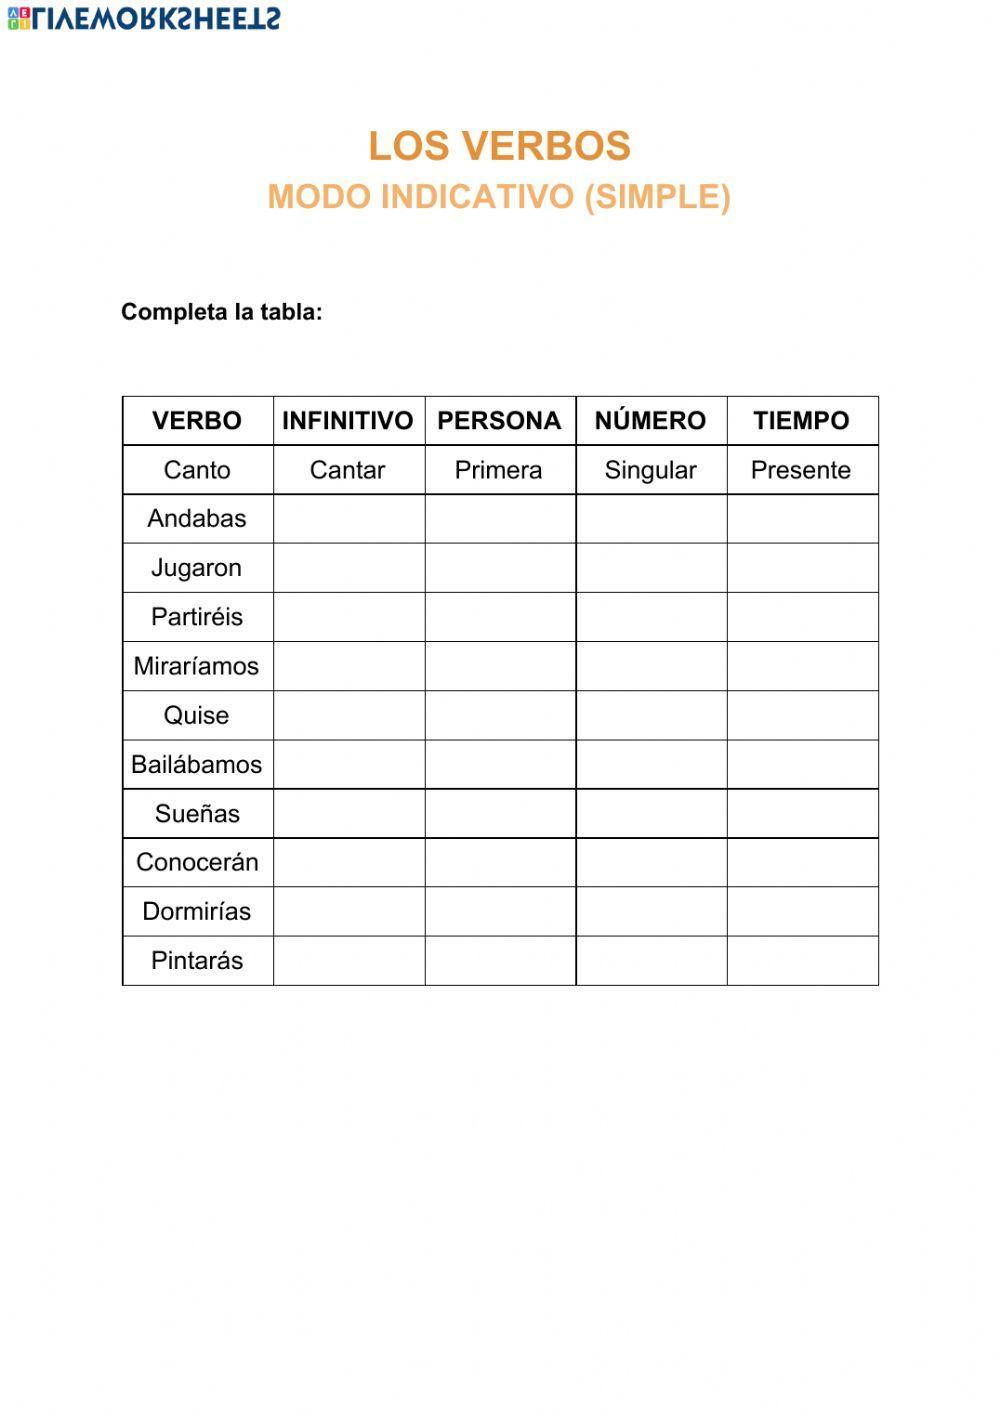 Los verbos - modo indicativo (t. simples)